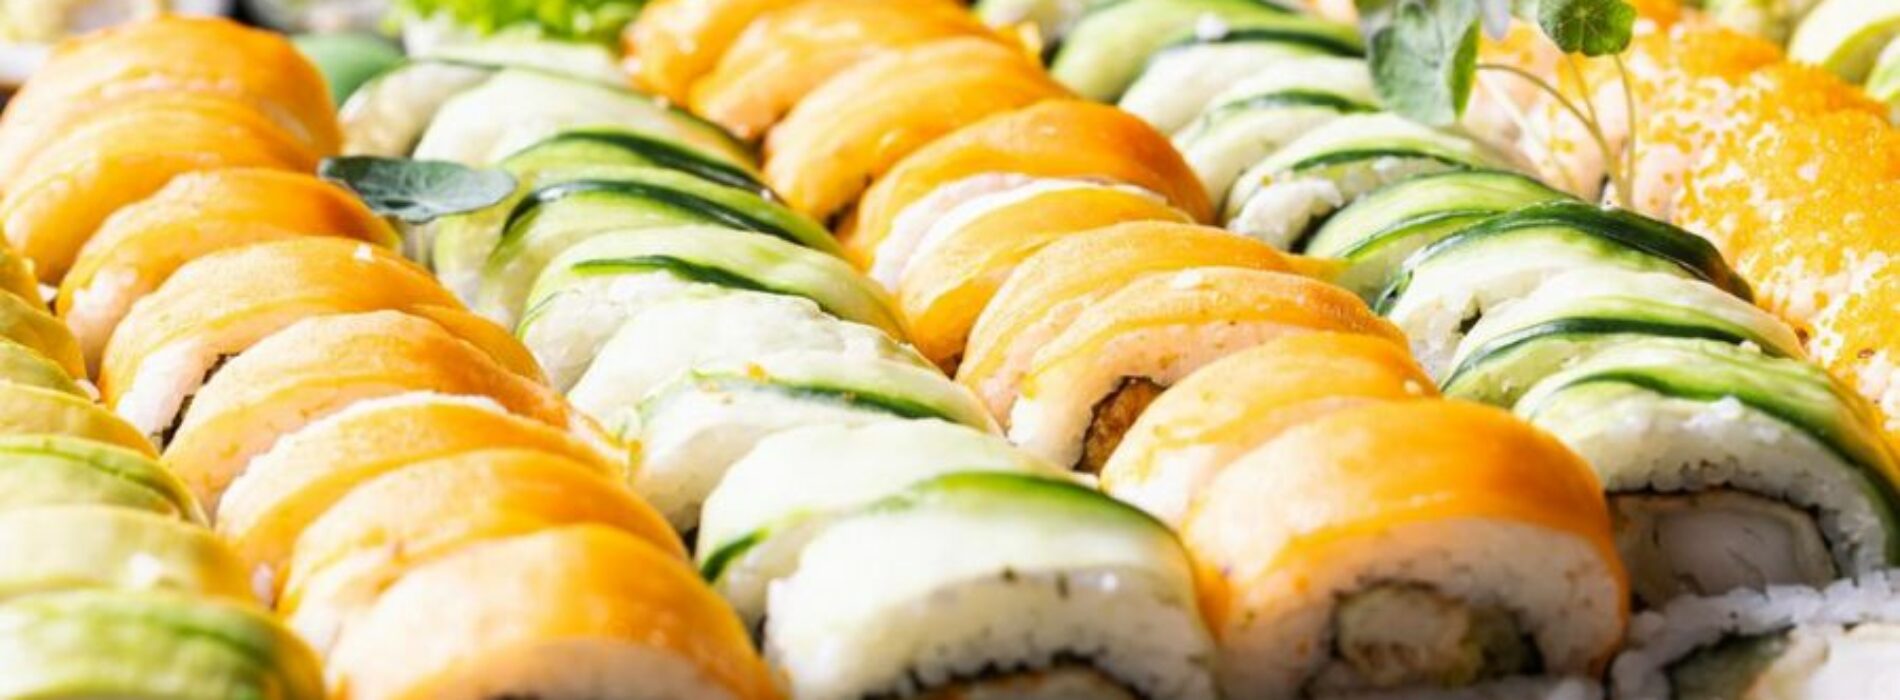 Niespodziewani goście i sushi – Sushi Friends Kraków ratuje z opresji